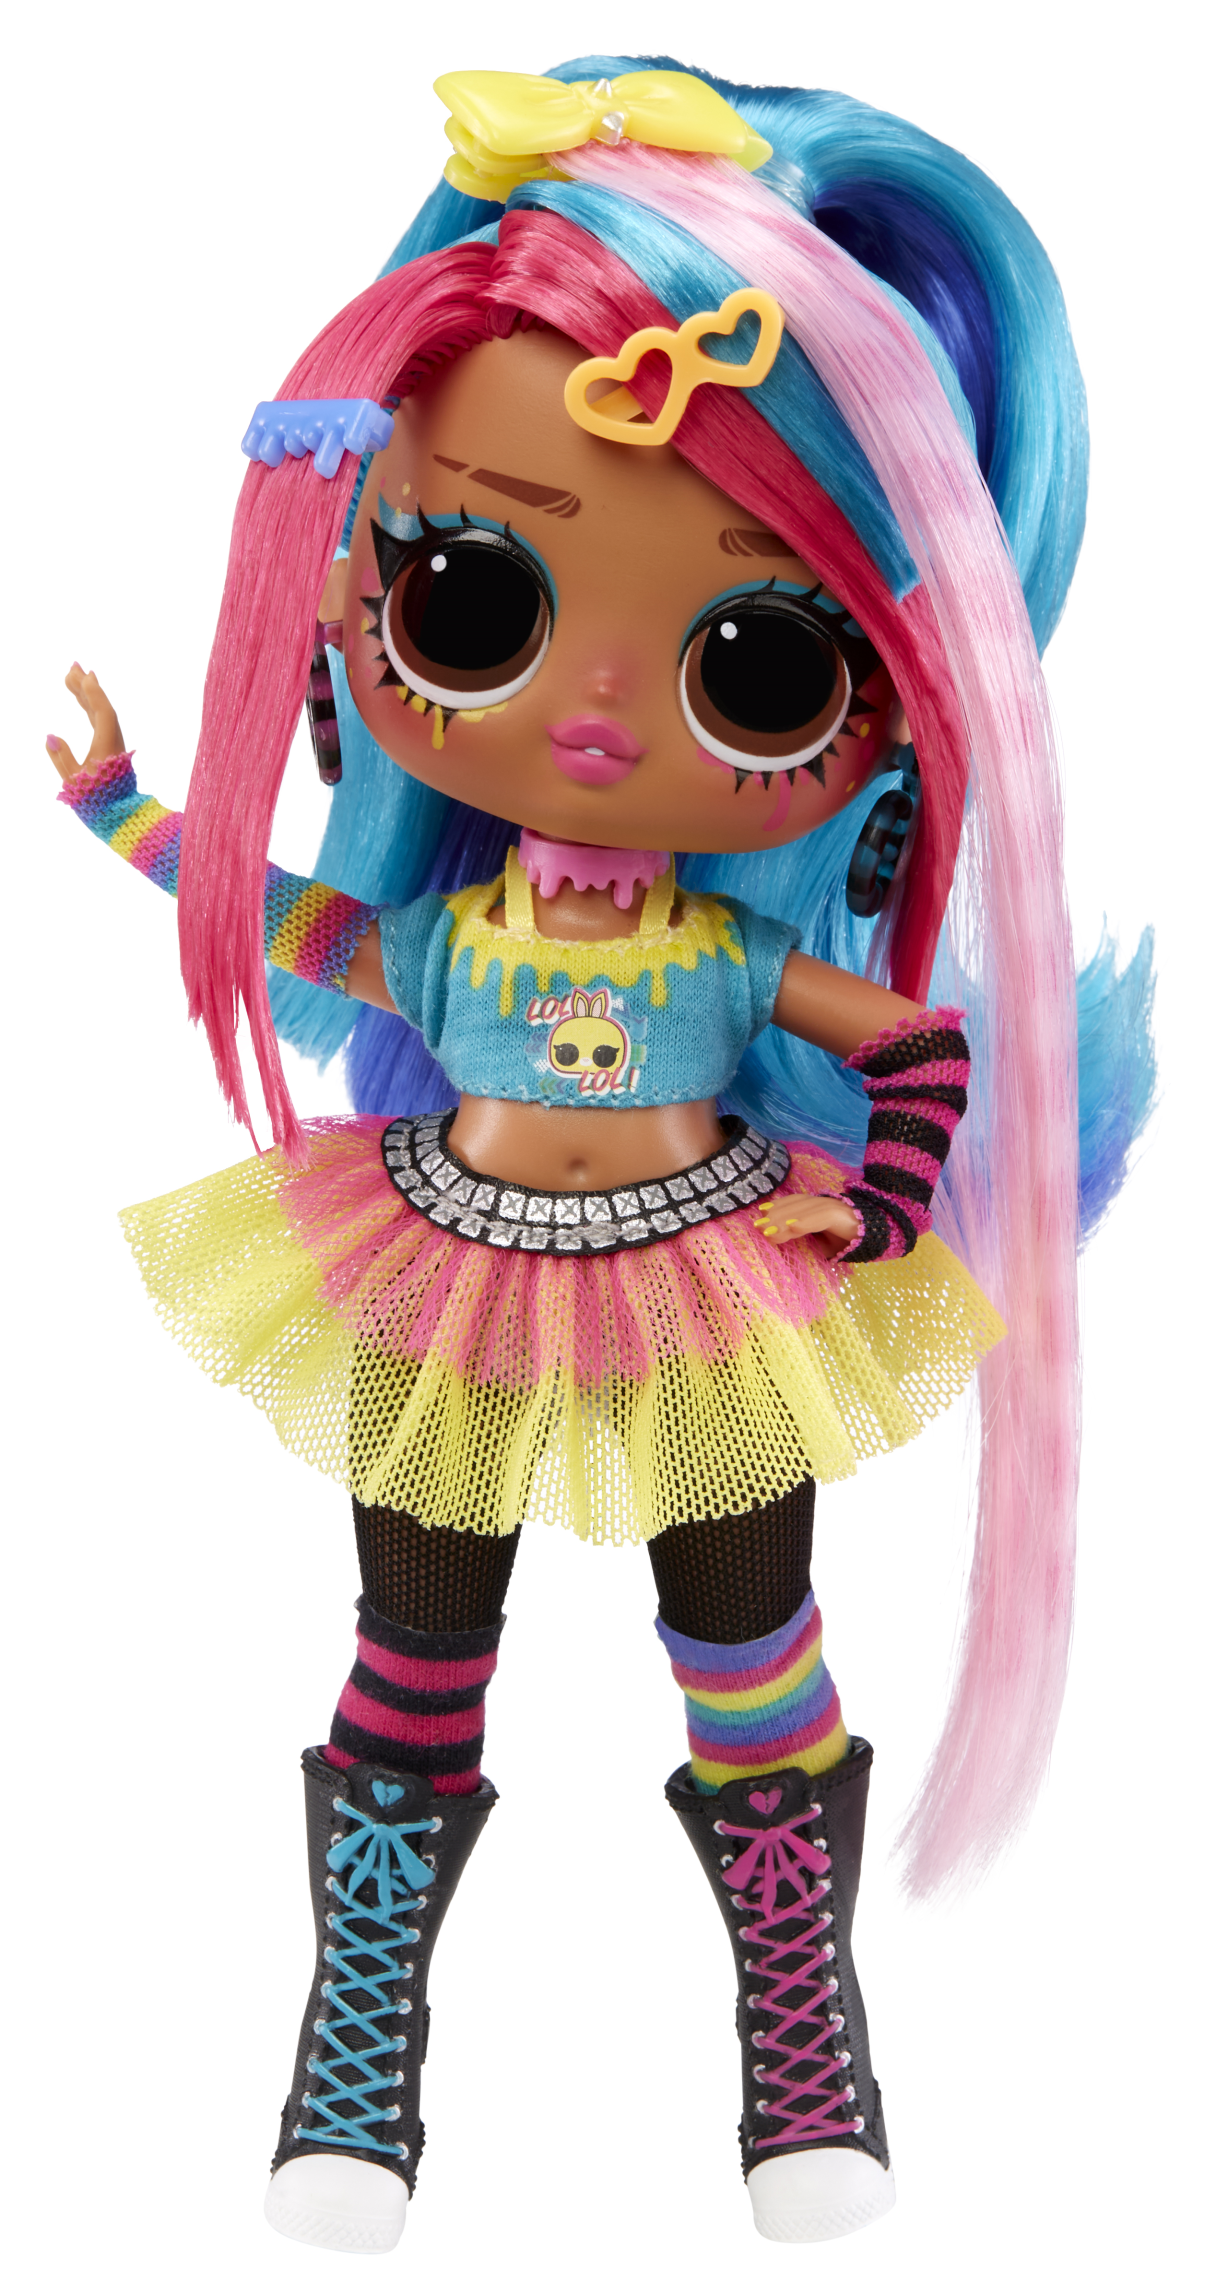 L.o.l. surprise! tweens bambole alla moda, serie 3, emma emo, bambola da 15  cm con 15 sorprese tra cui vestiti, accessori e altro - Toys Center